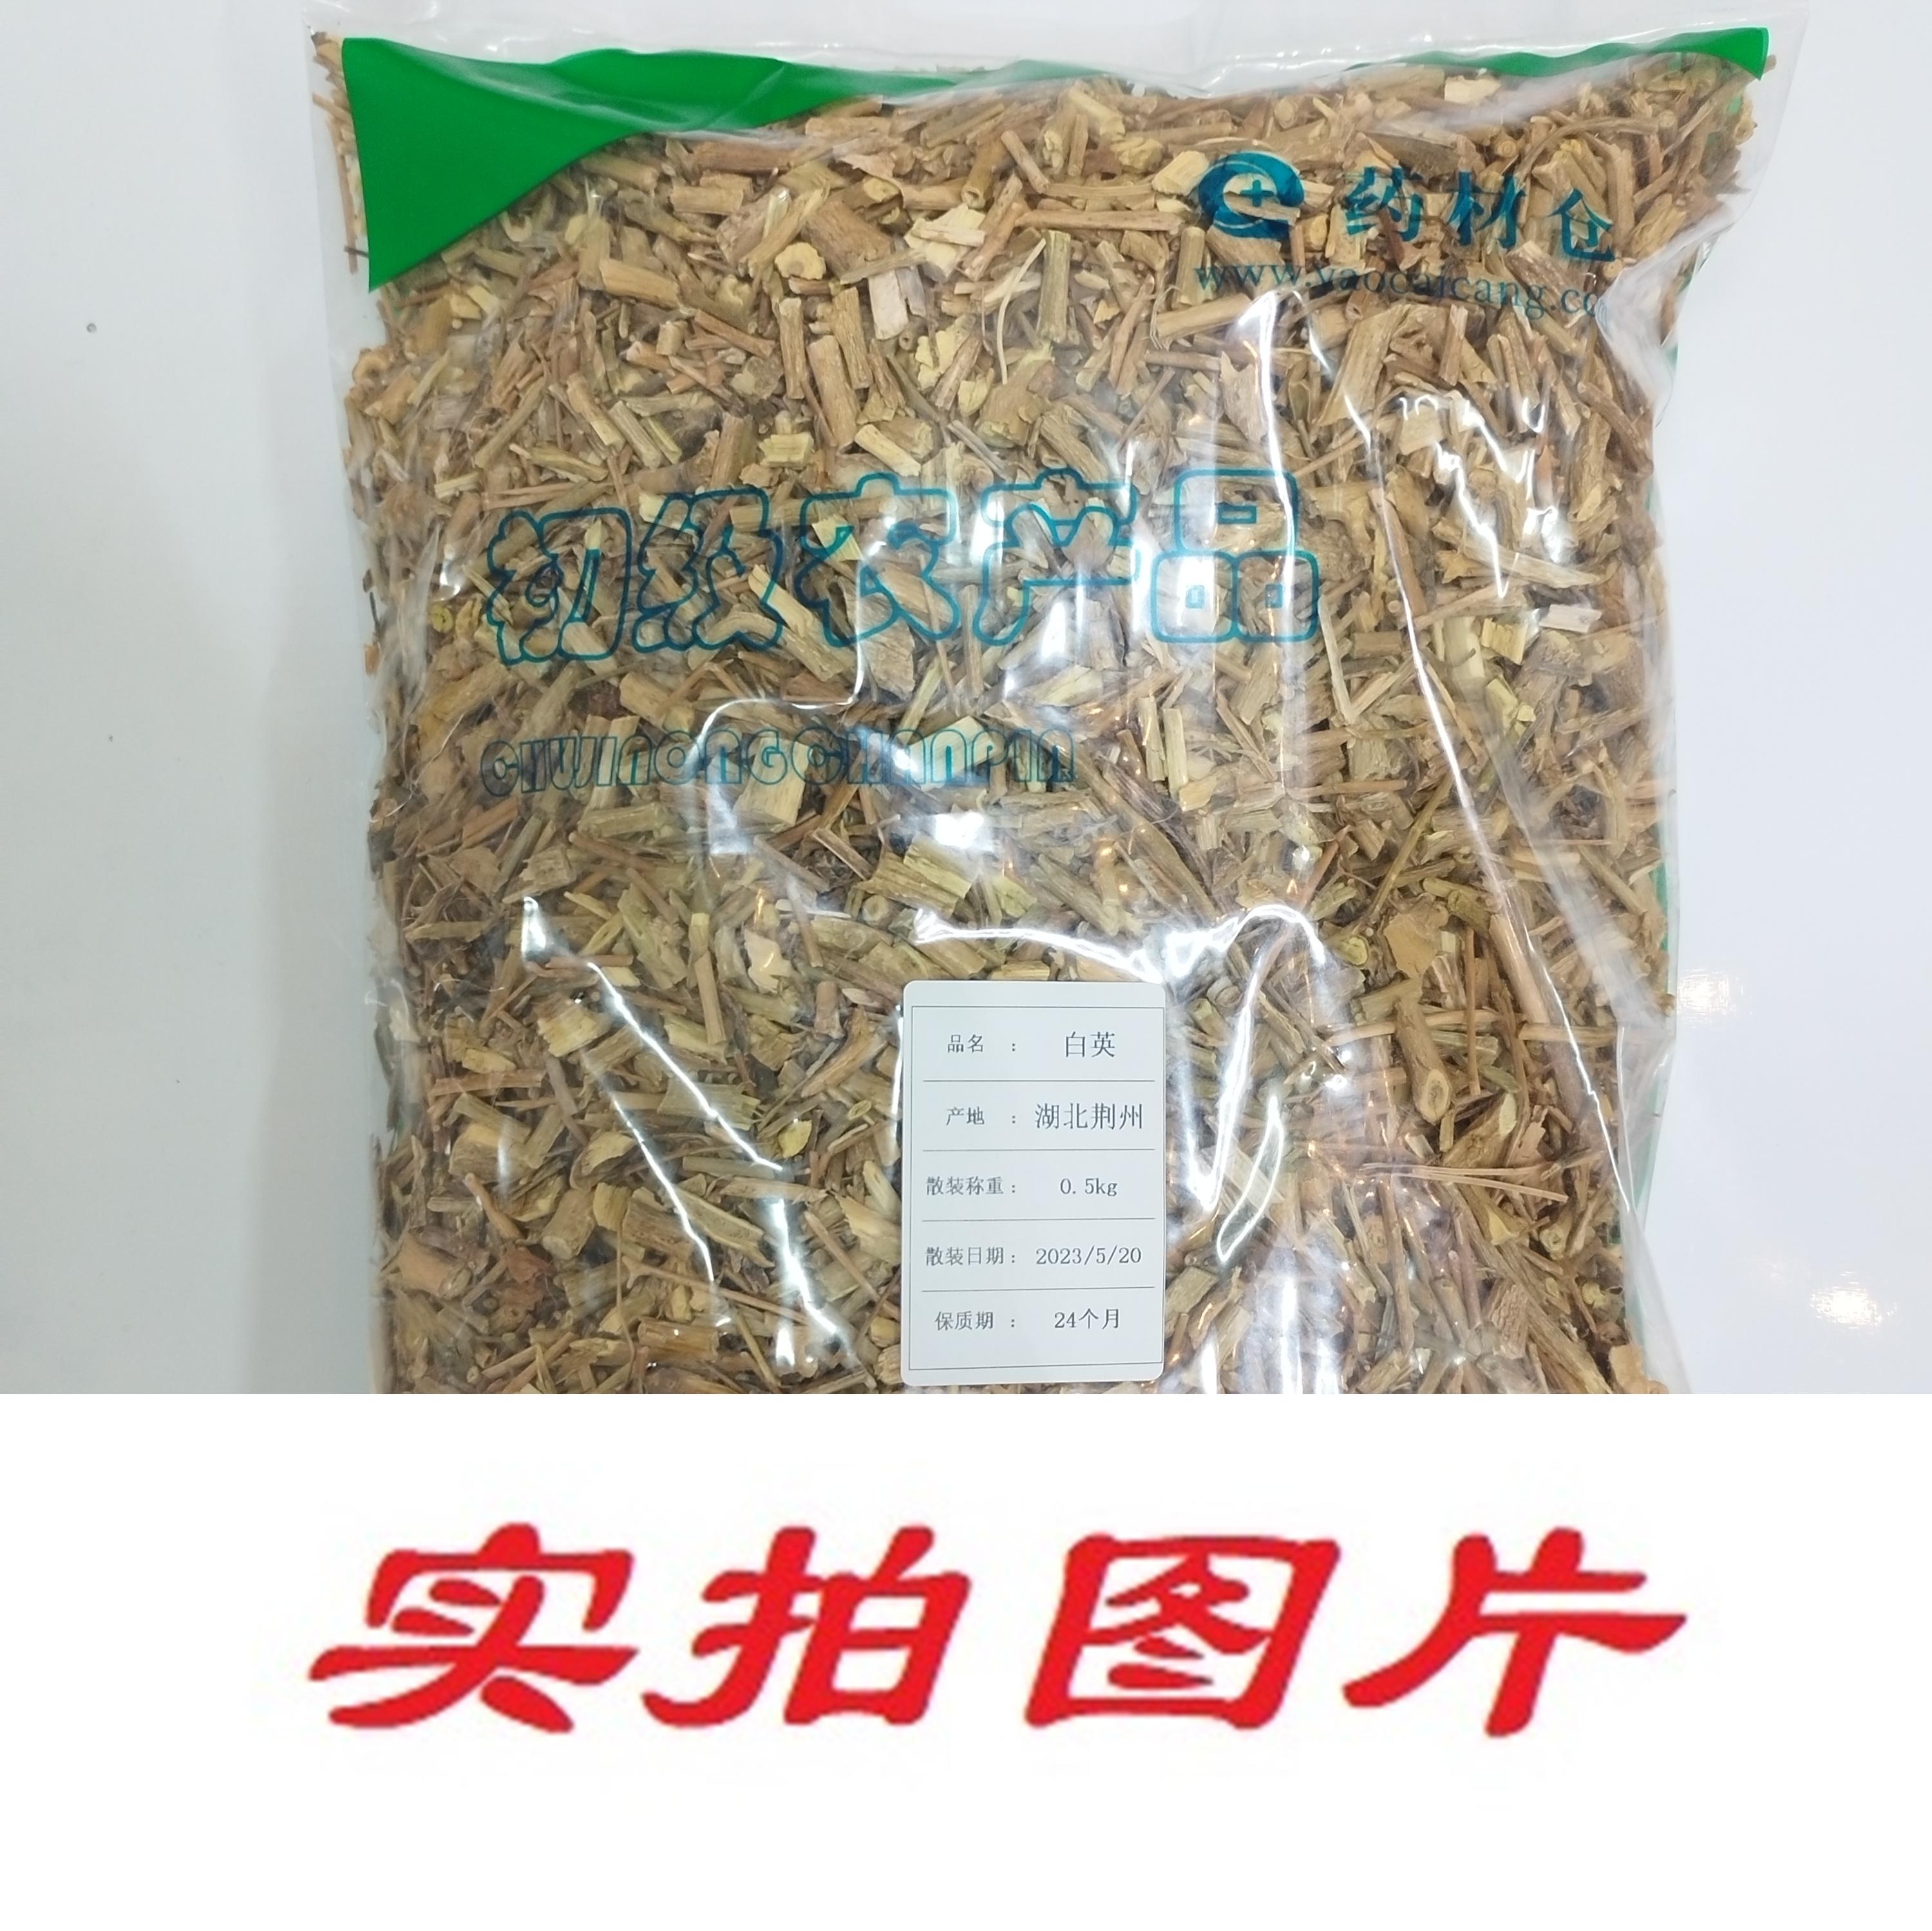 【】白英0.5kg-农副产品